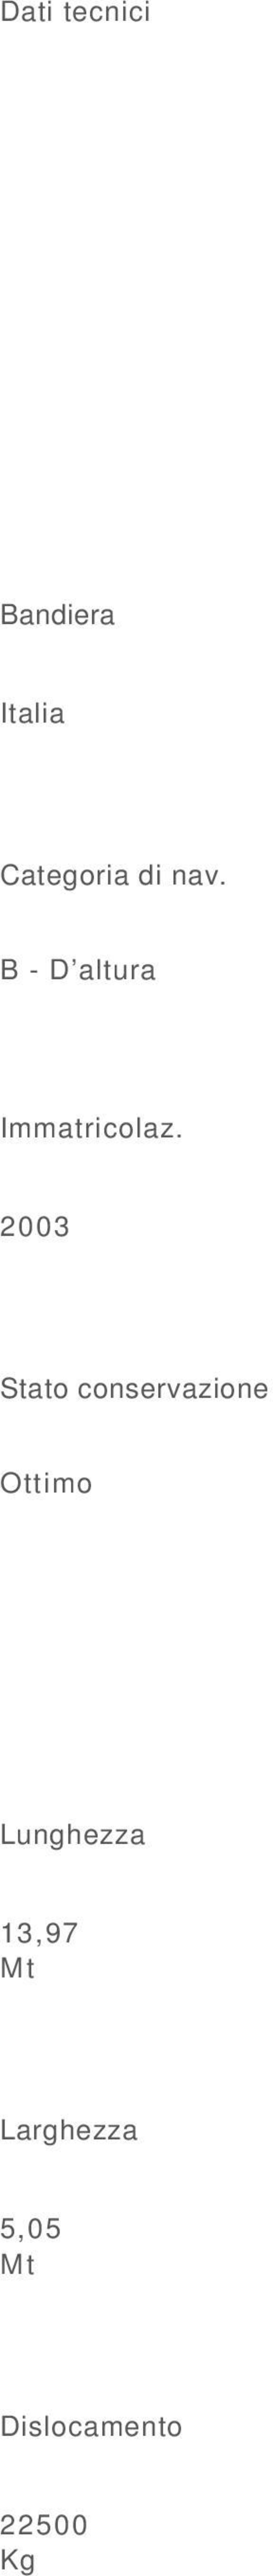 2003 Stato conservazione Ottimo